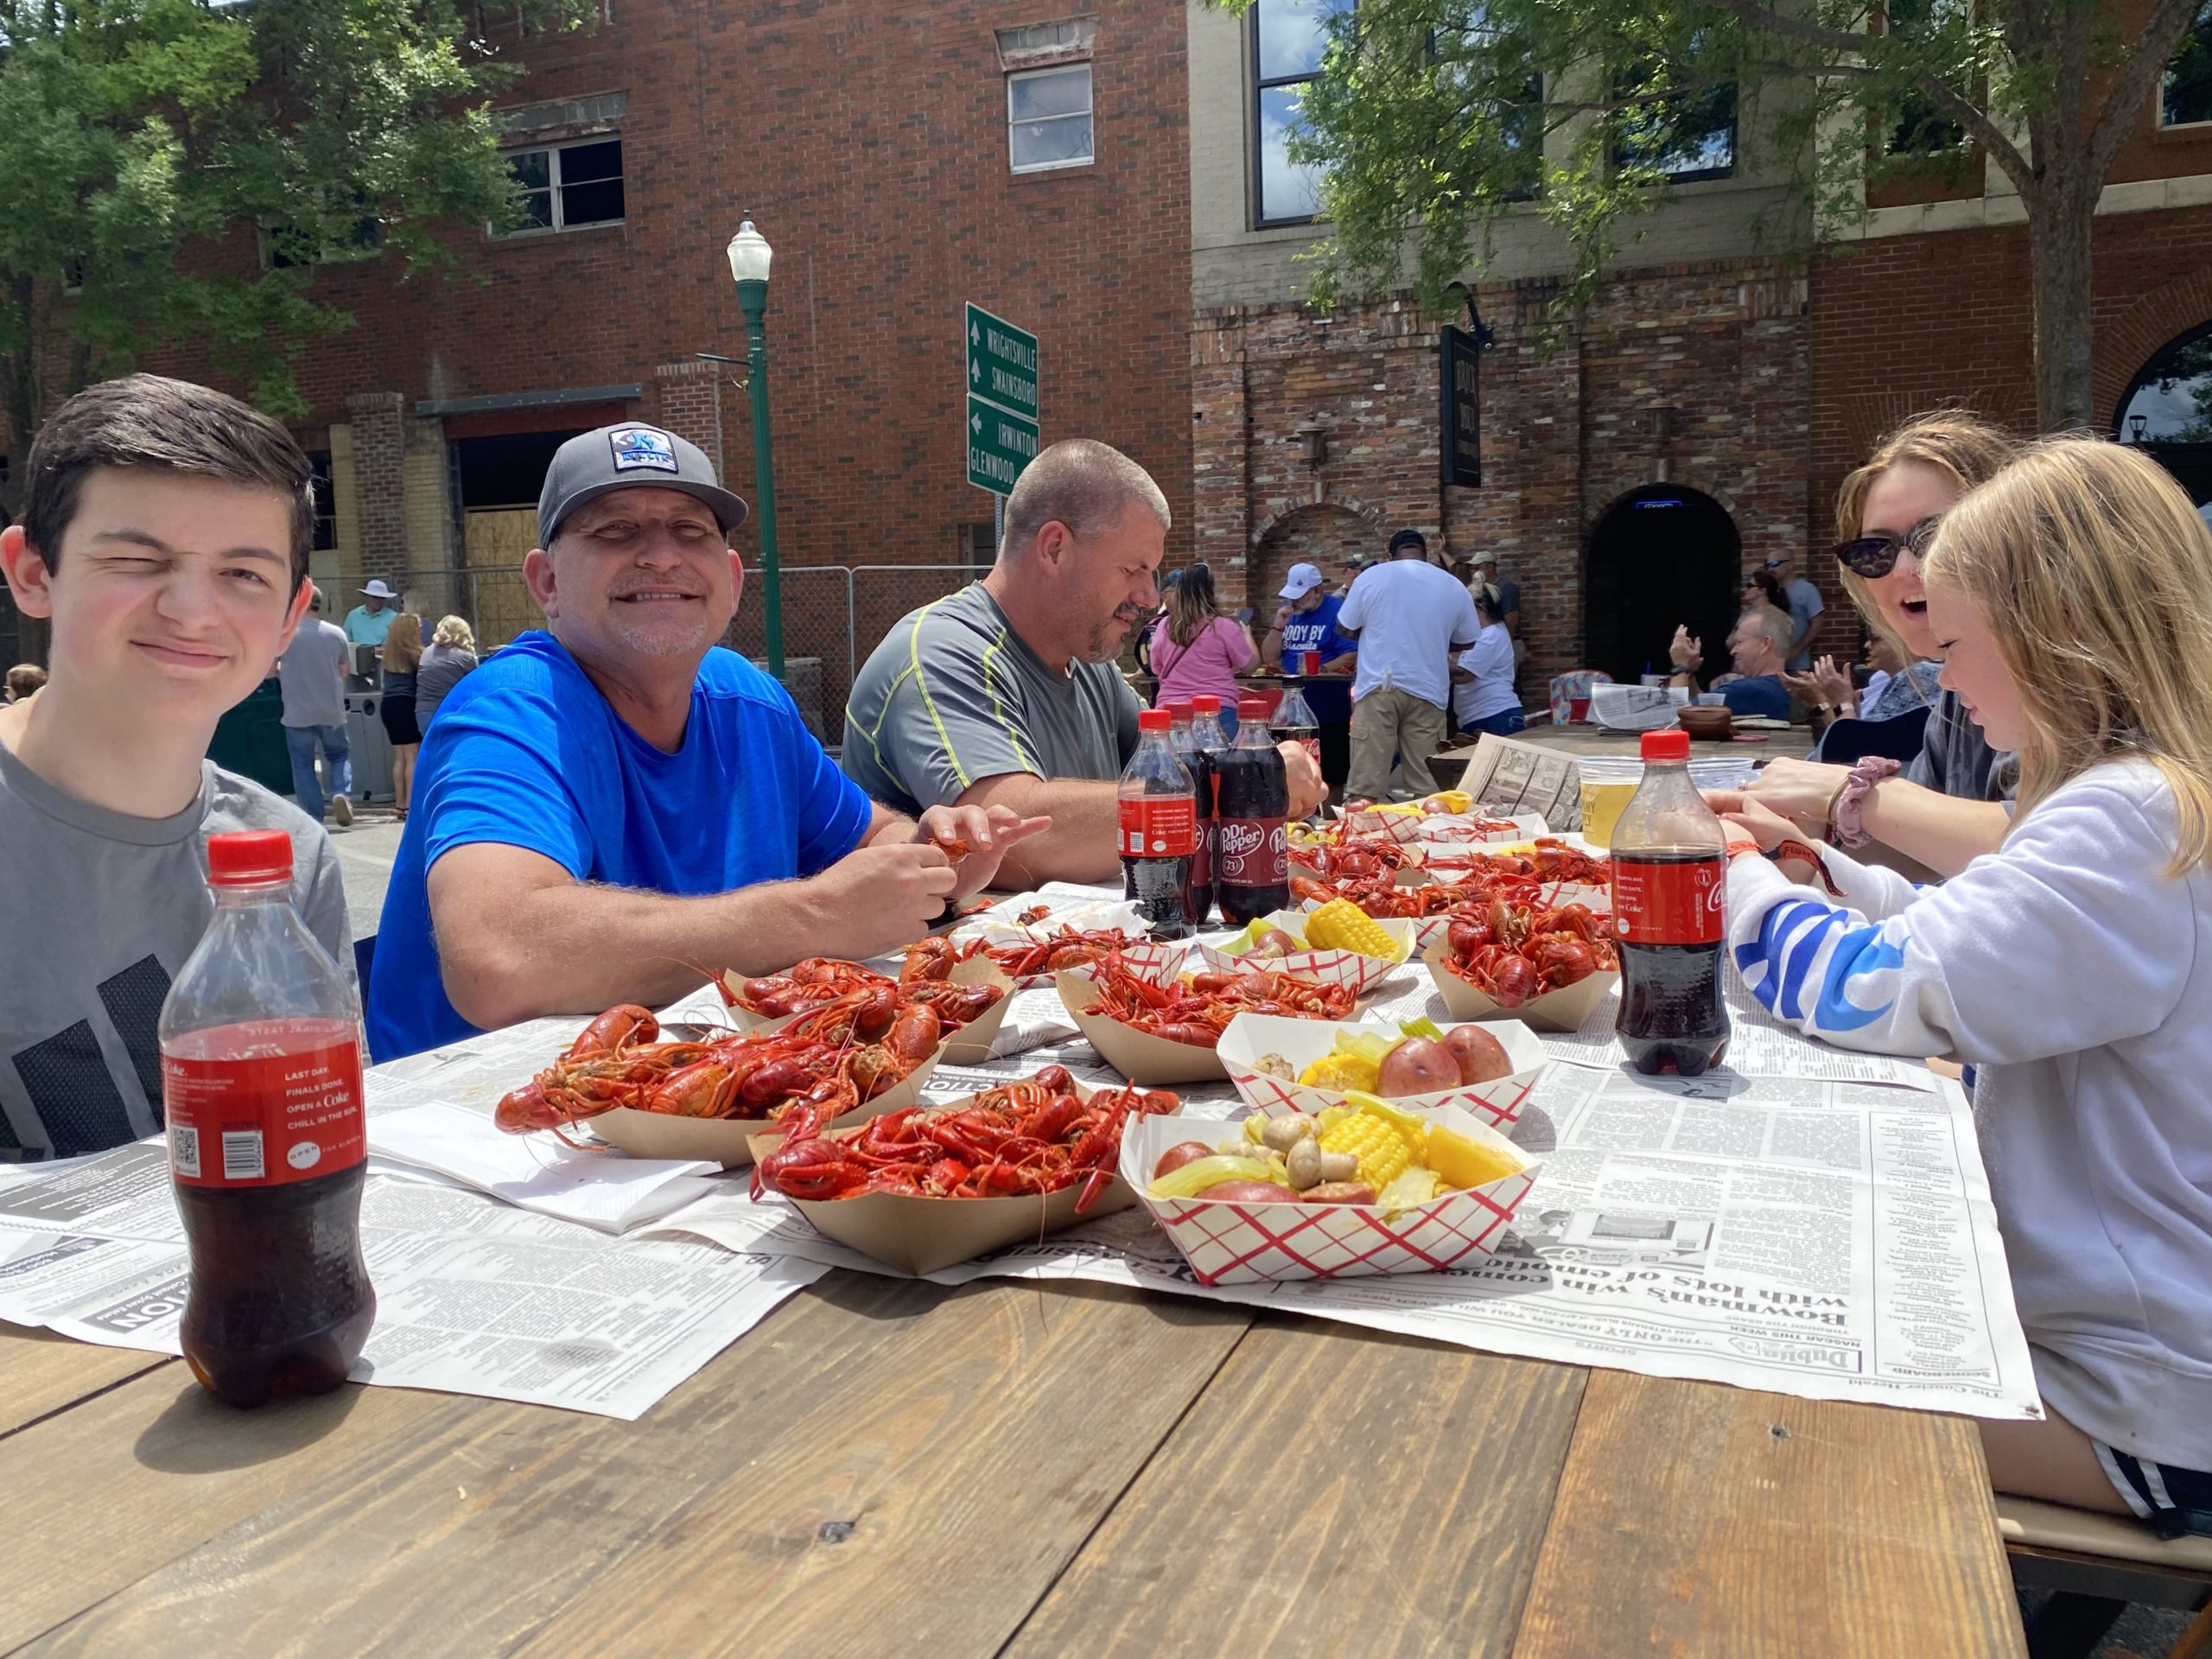 Family enjoys crawfish at picnic table in May